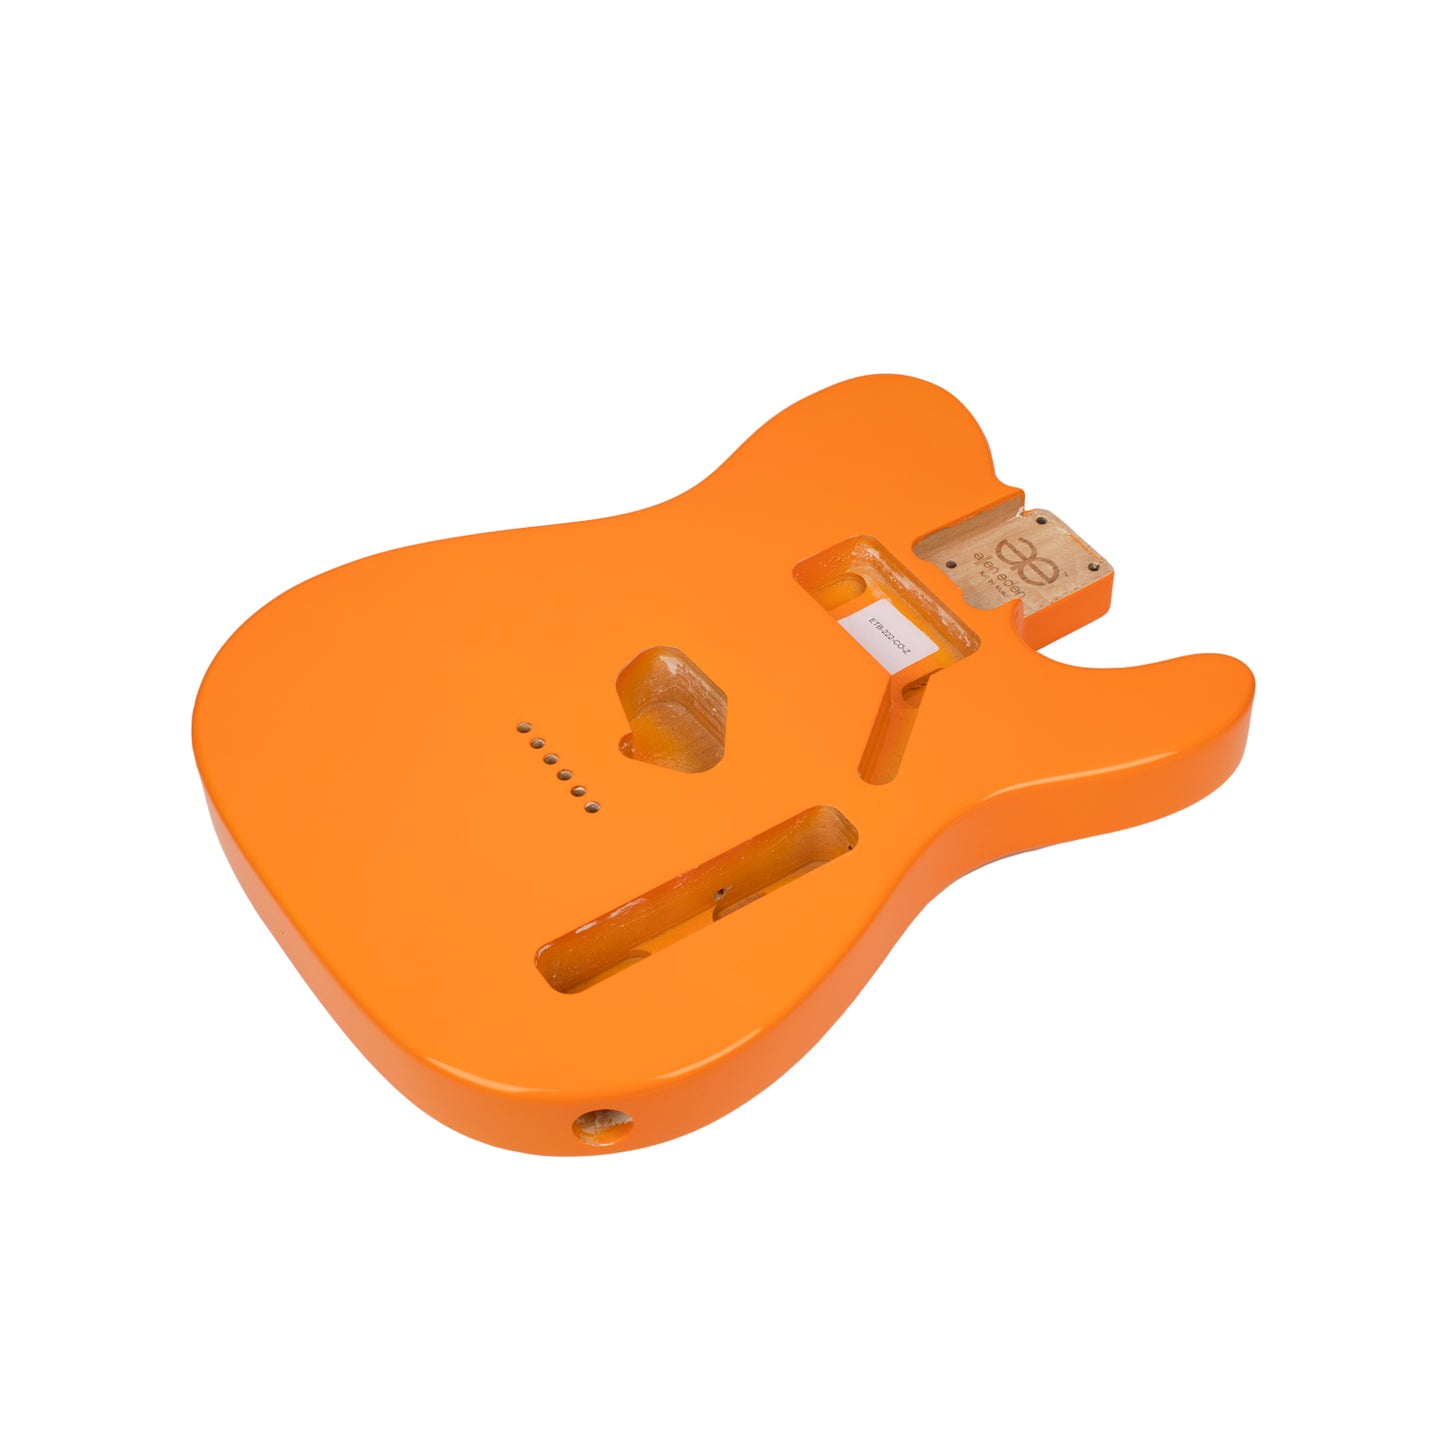 AE Guitars® T-Style Alder Replacement Guitar Body Capri Orange